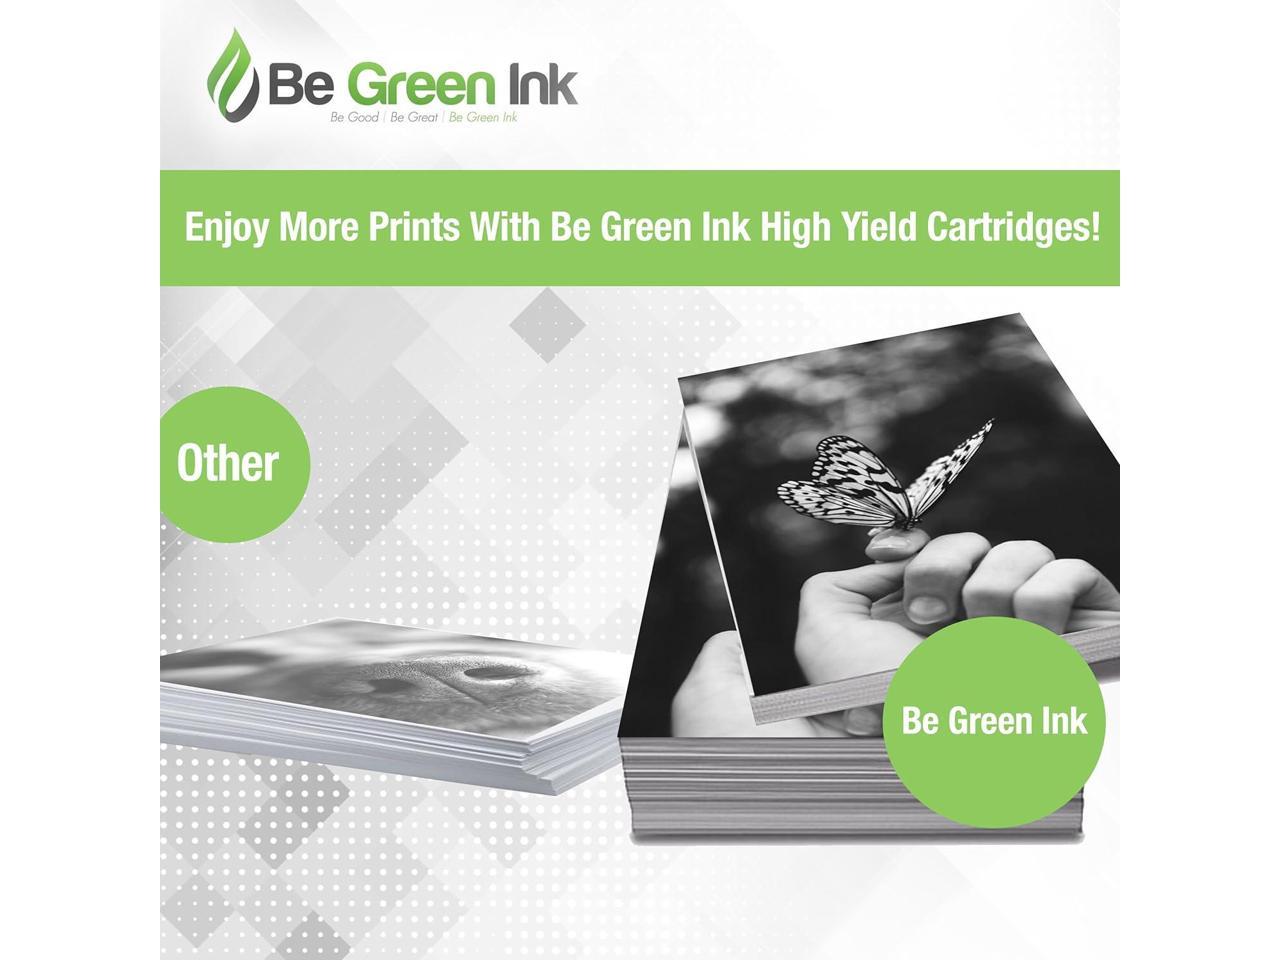 Be Green Ink Compatible Replacement Magenta Toner Cartridge for Lexmark CX410de CX510de CX410dte CX410e CX510dthe CX510dhe High Yield 80C1HM0 801HM 